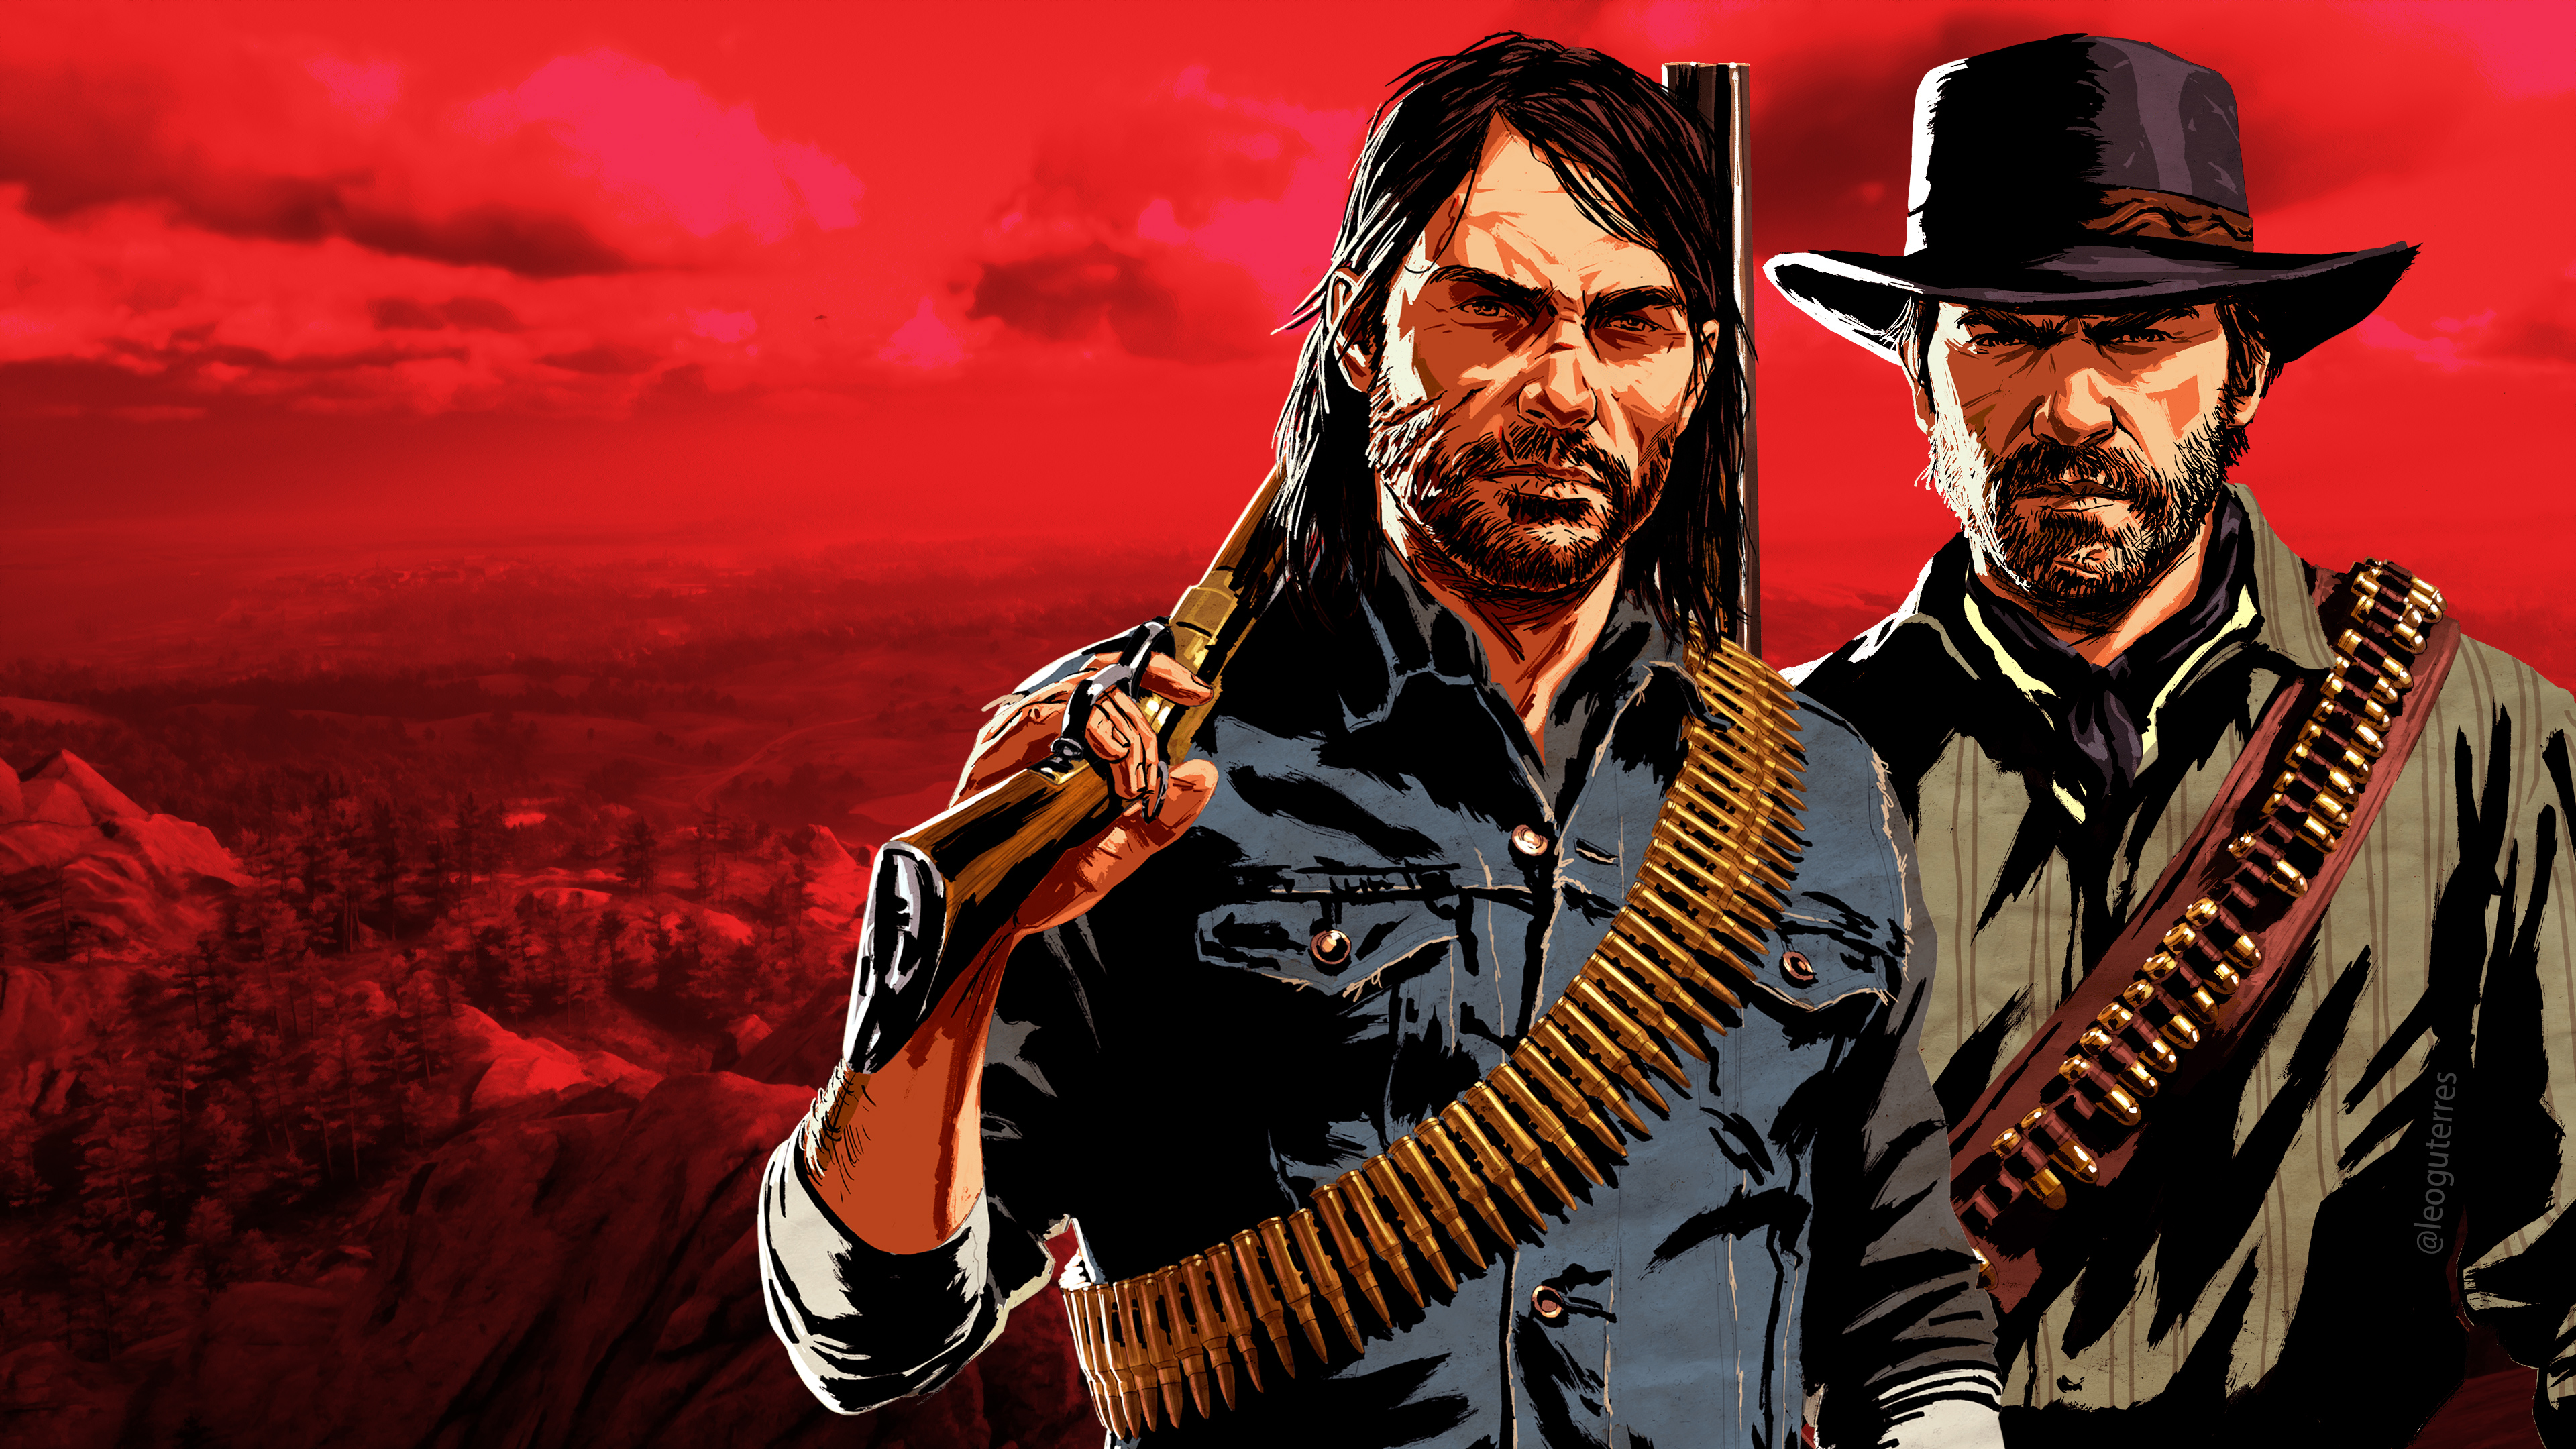 Được xây dựng trên bối cảnh miền Tây hoang dã của Mỹ vào đầu thế kỷ 20, Red Dead Redemption là một trong những trò chơi phiêu lưu hành động tuyệt vời nhất của thế giới game. Nếu bạn là người yêu thích cảnh đẹp và chuyện phiêu lưu, đây chắc chắn sẽ là sự lựa chọn hoàn hảo cho bạn.